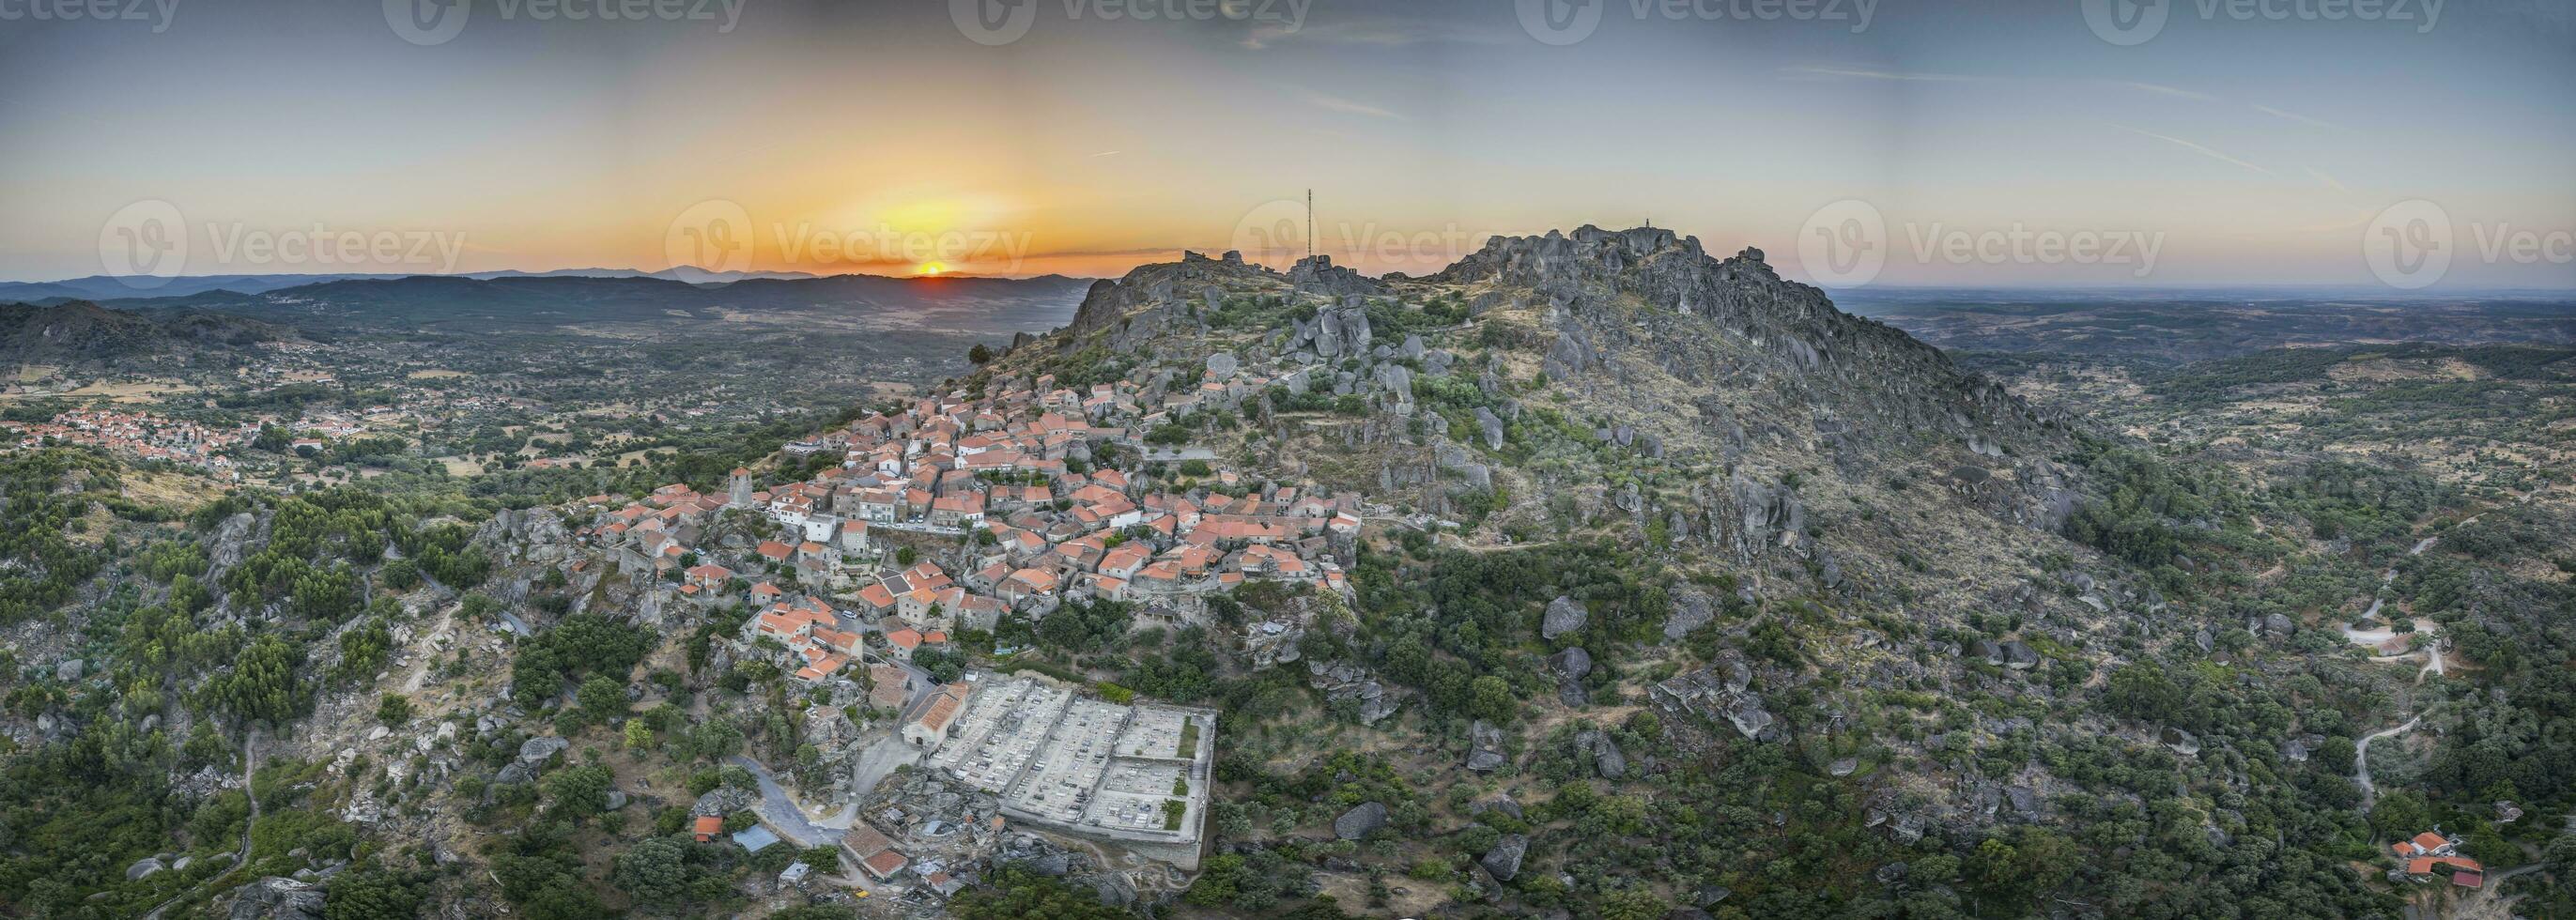 drone panorama de historique ville et fortification Monsanto dans le Portugal dans le Matin pendant lever du soleil photo